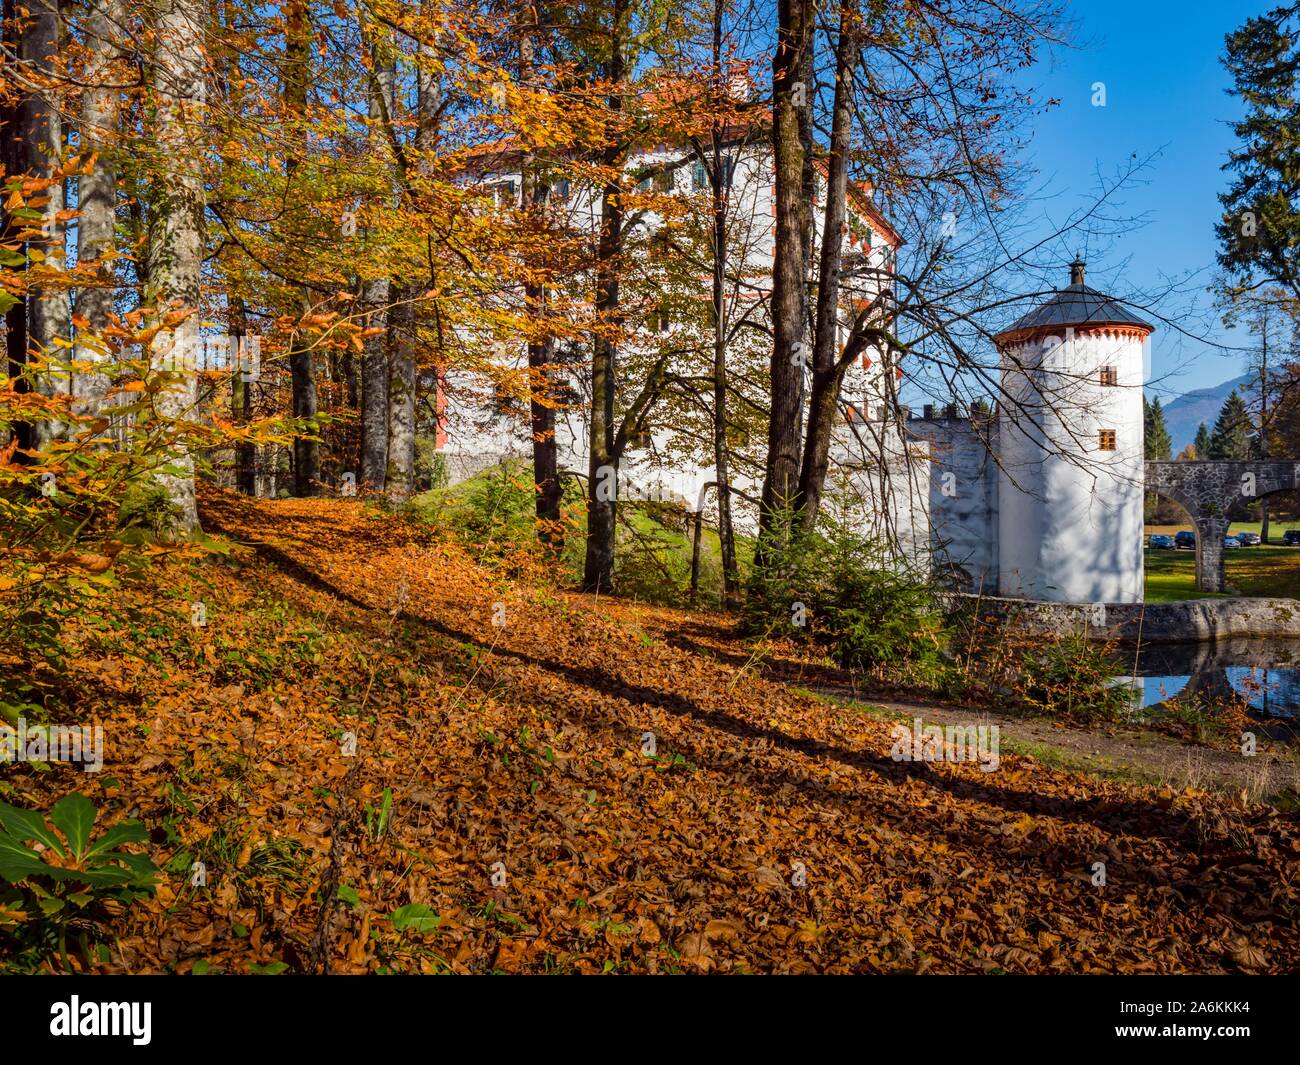 Sneznik castle in Slovenia Stock Photo